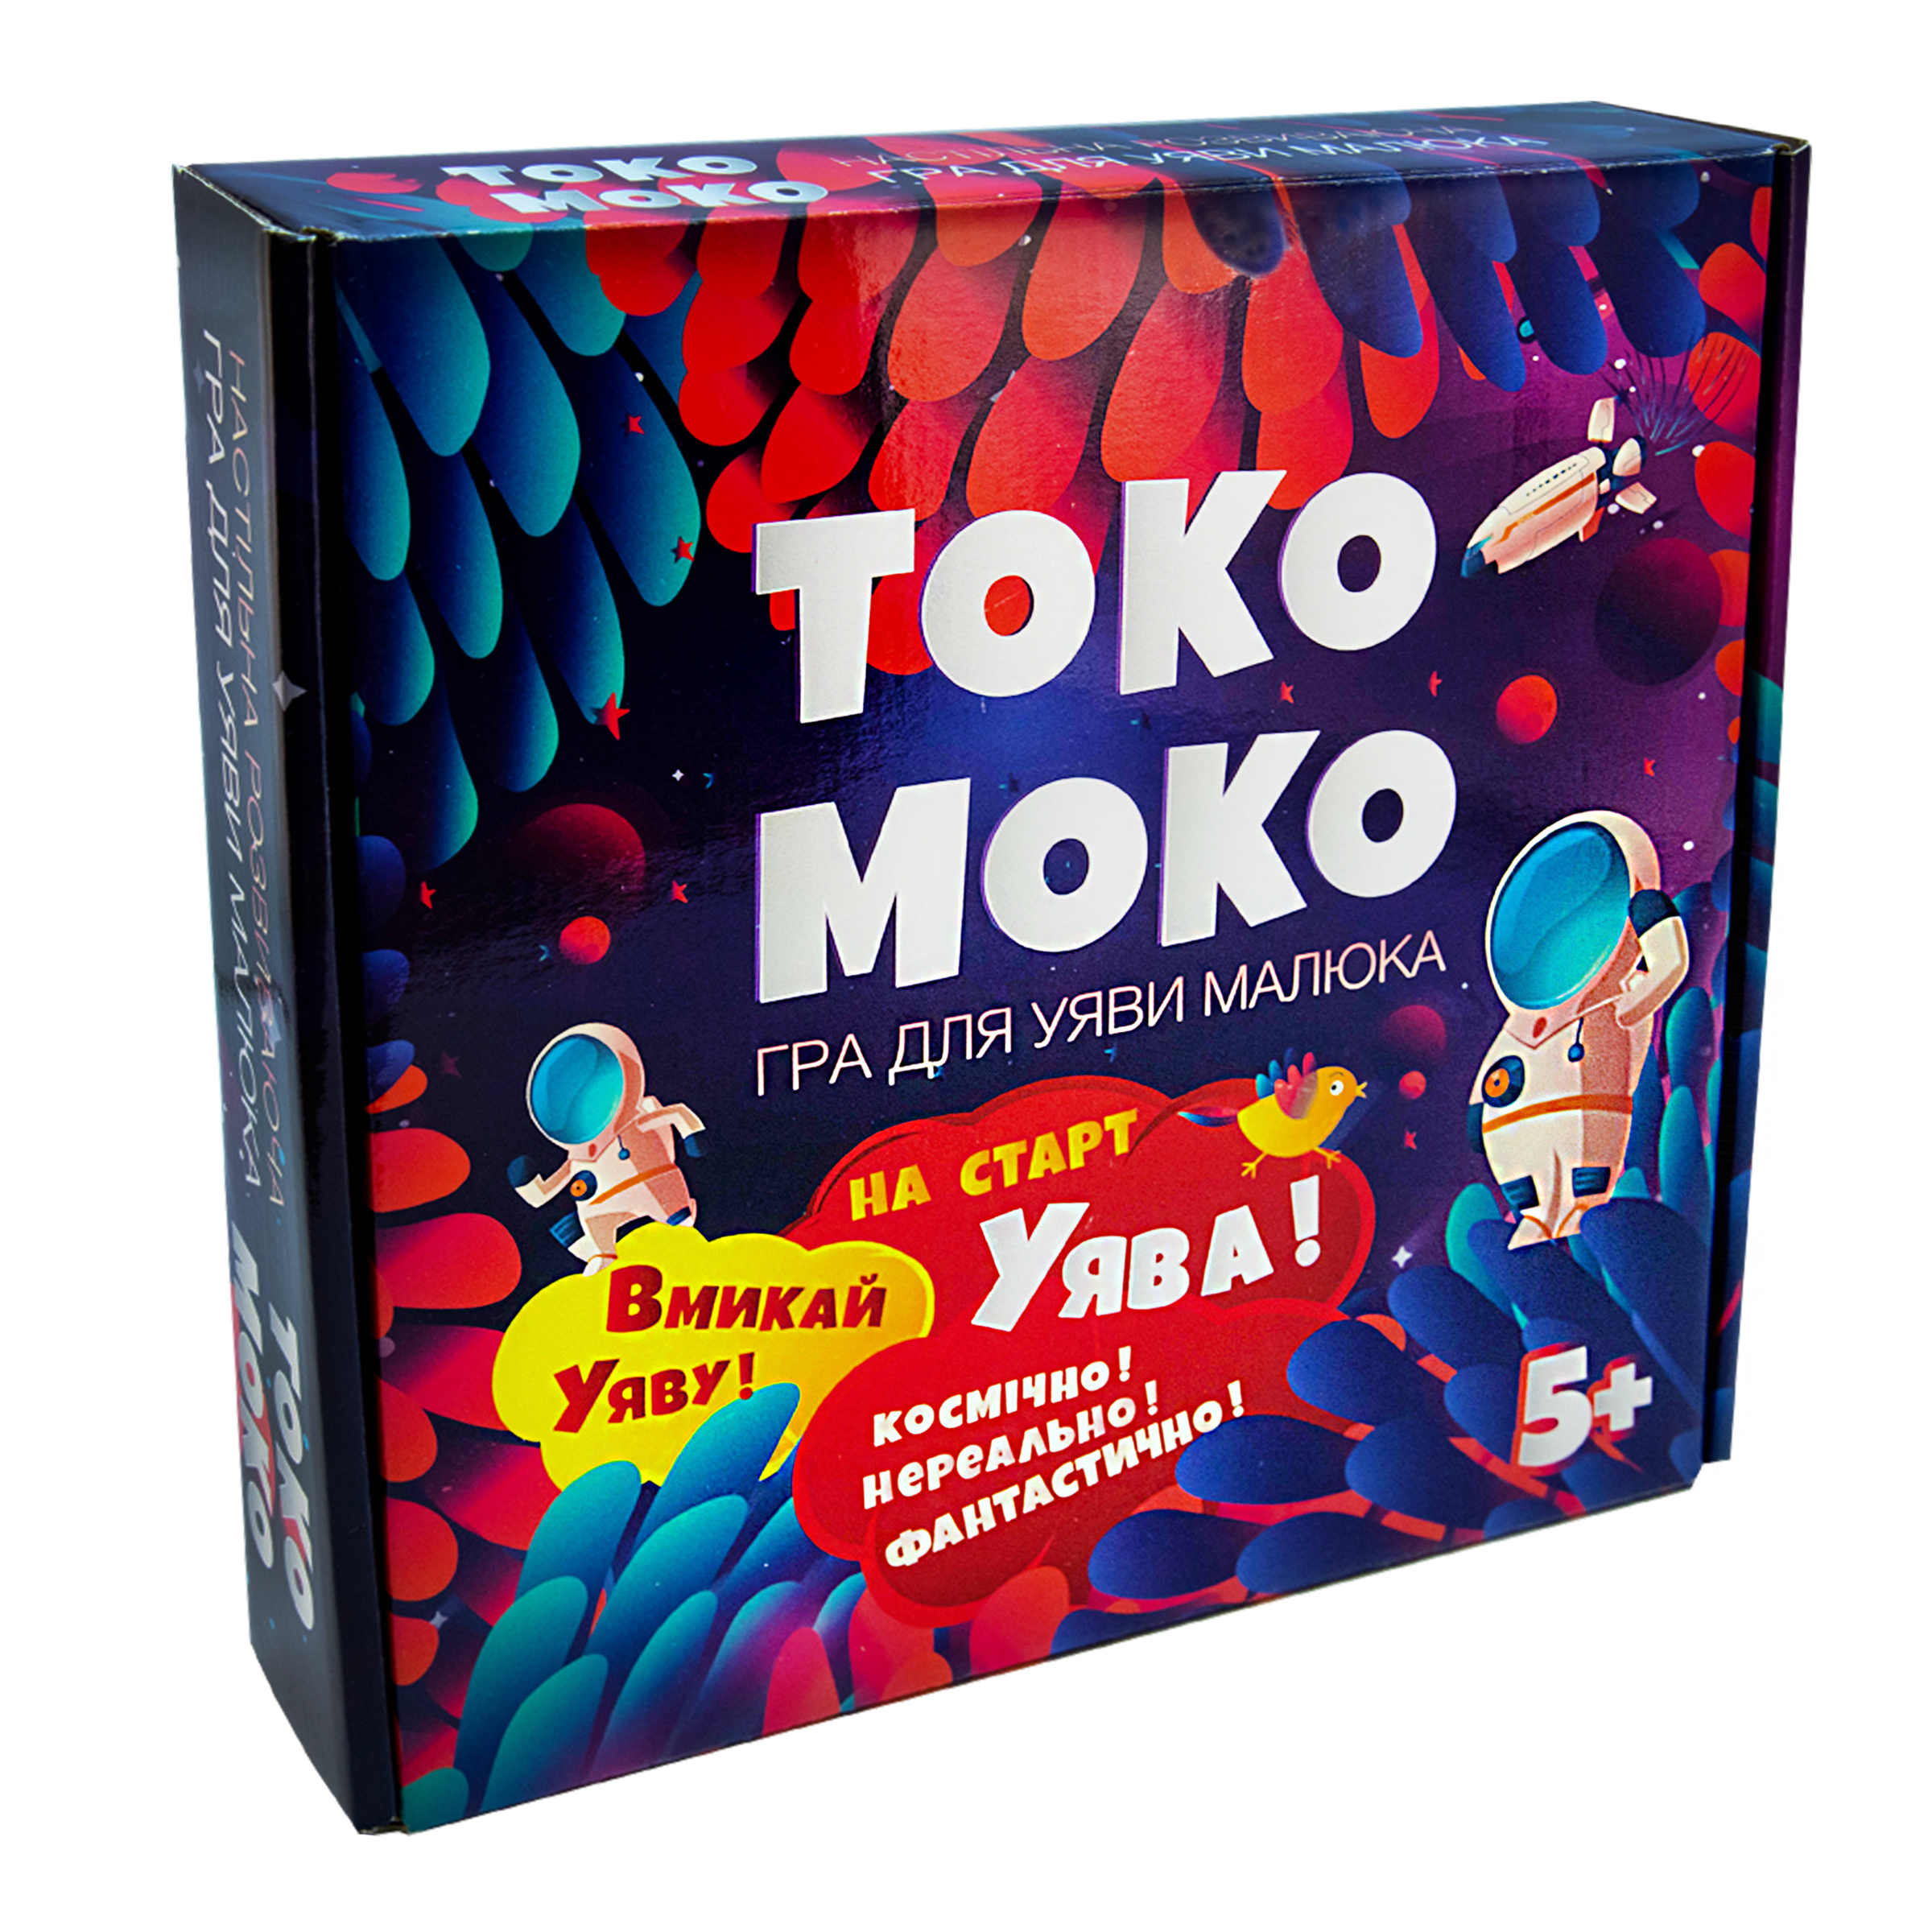 Board game "Toko-moko" for imagination (30257)